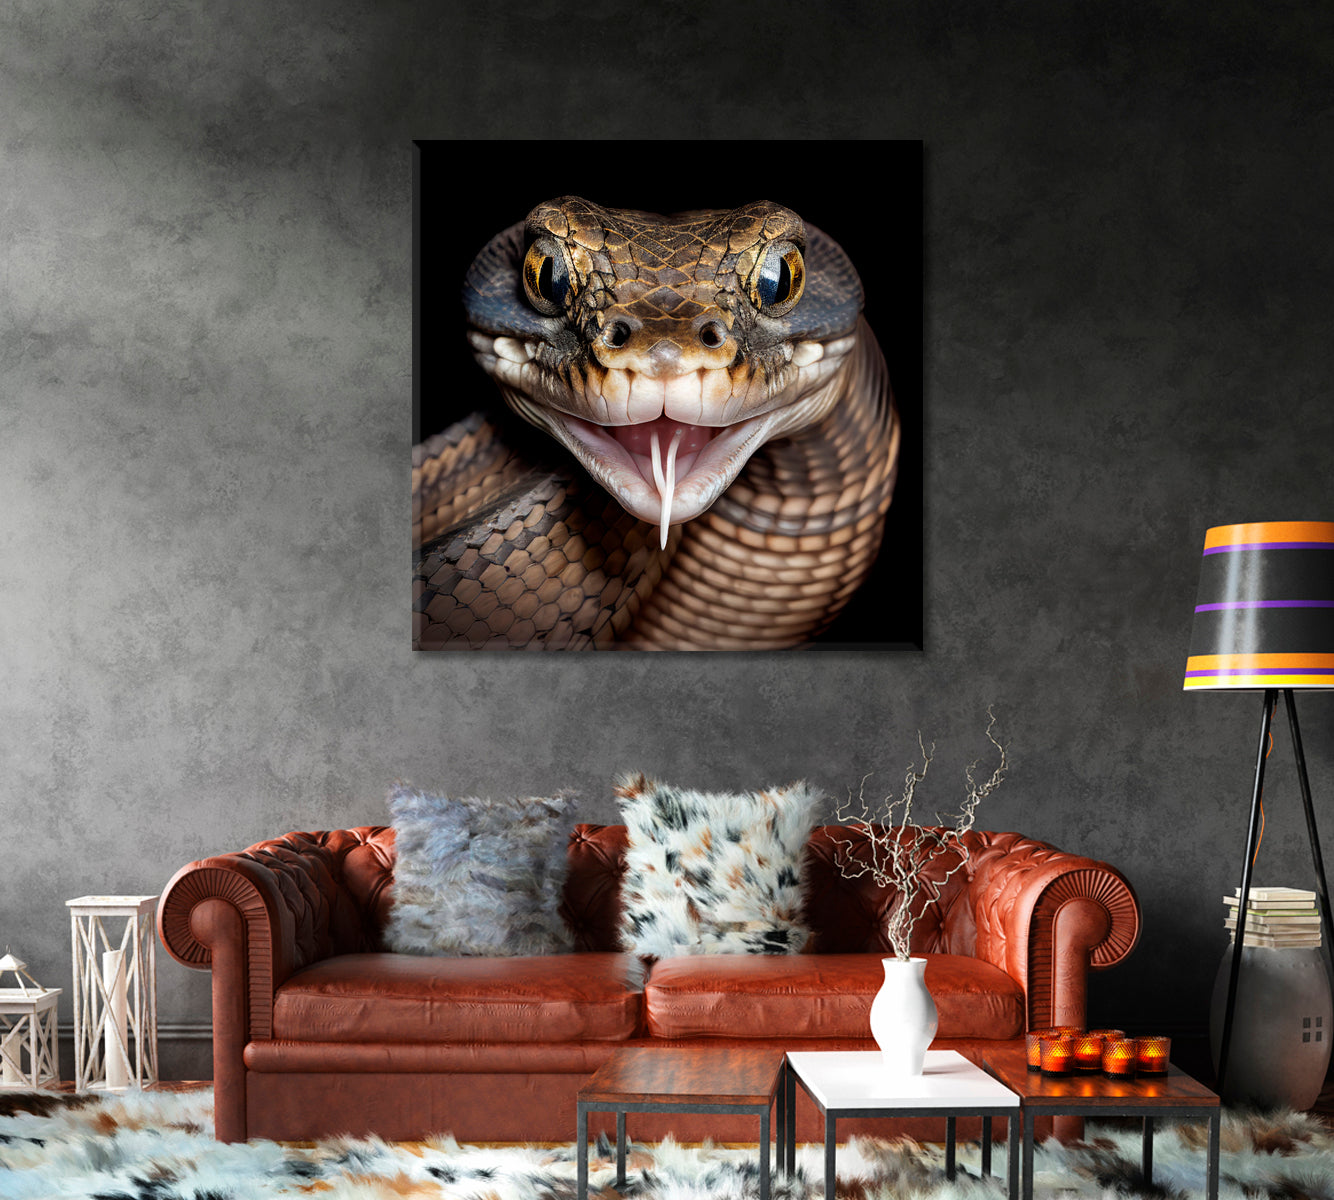 Poisonous Snake Canvas Art Home Decor-Canvas Print-CetArt-1 panel-12x12 inches-CetArt